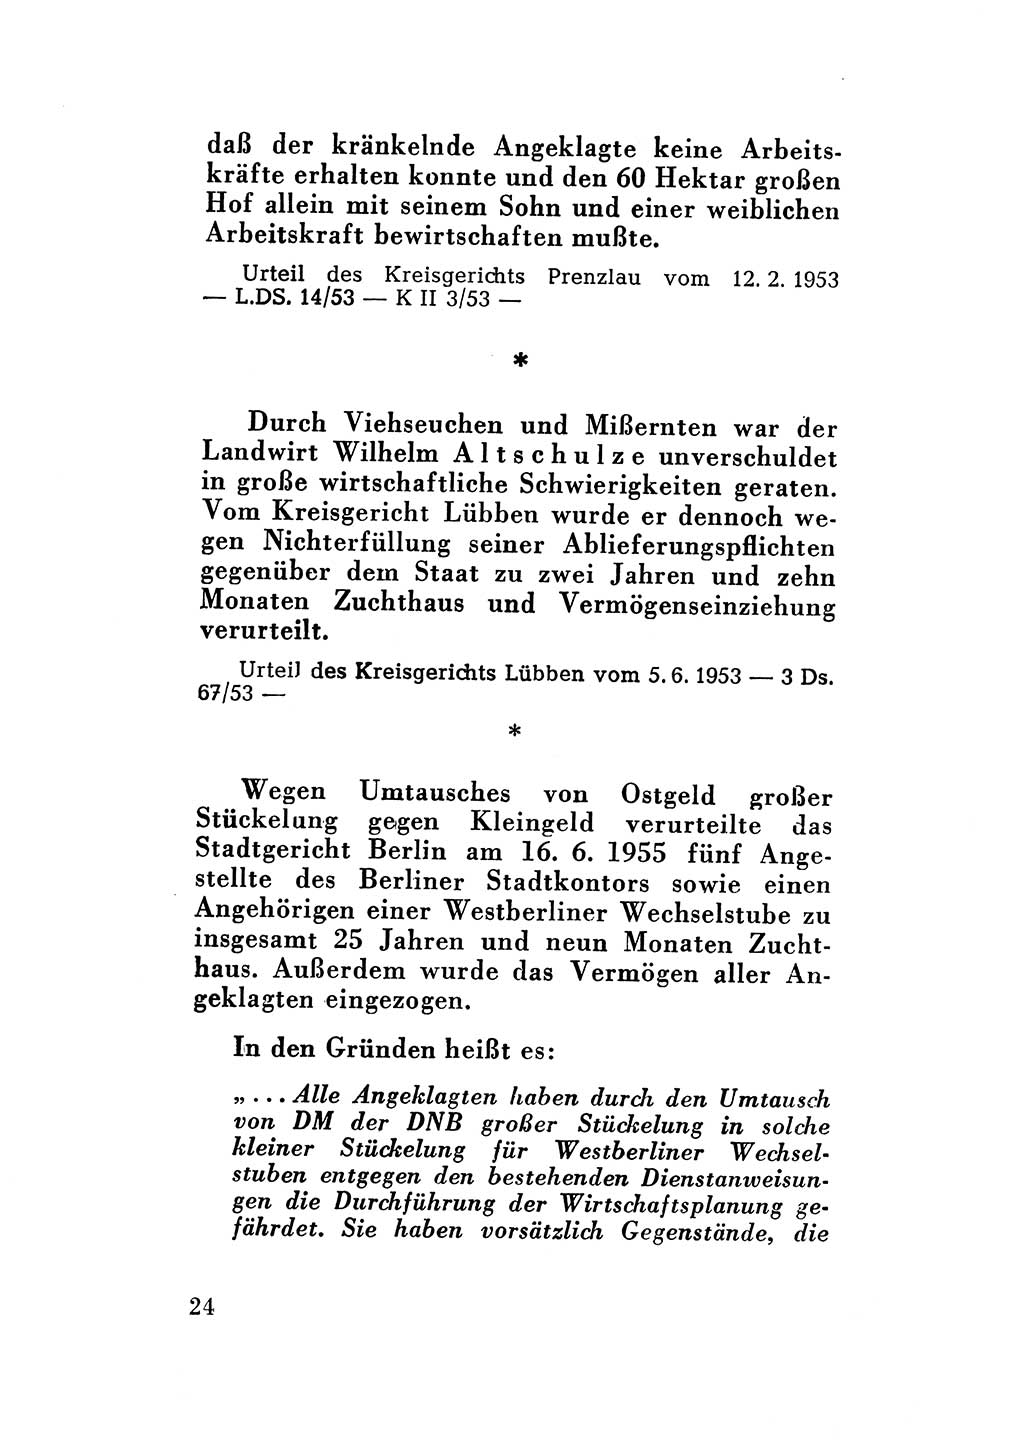 Katalog des Unrechts, Untersuchungsausschuß Freiheitlicher Juristen (UfJ) [Bundesrepublik Deutschland (BRD)] 1956, Seite 24 (Kat. UnR. UfJ BRD 1956, S. 24)